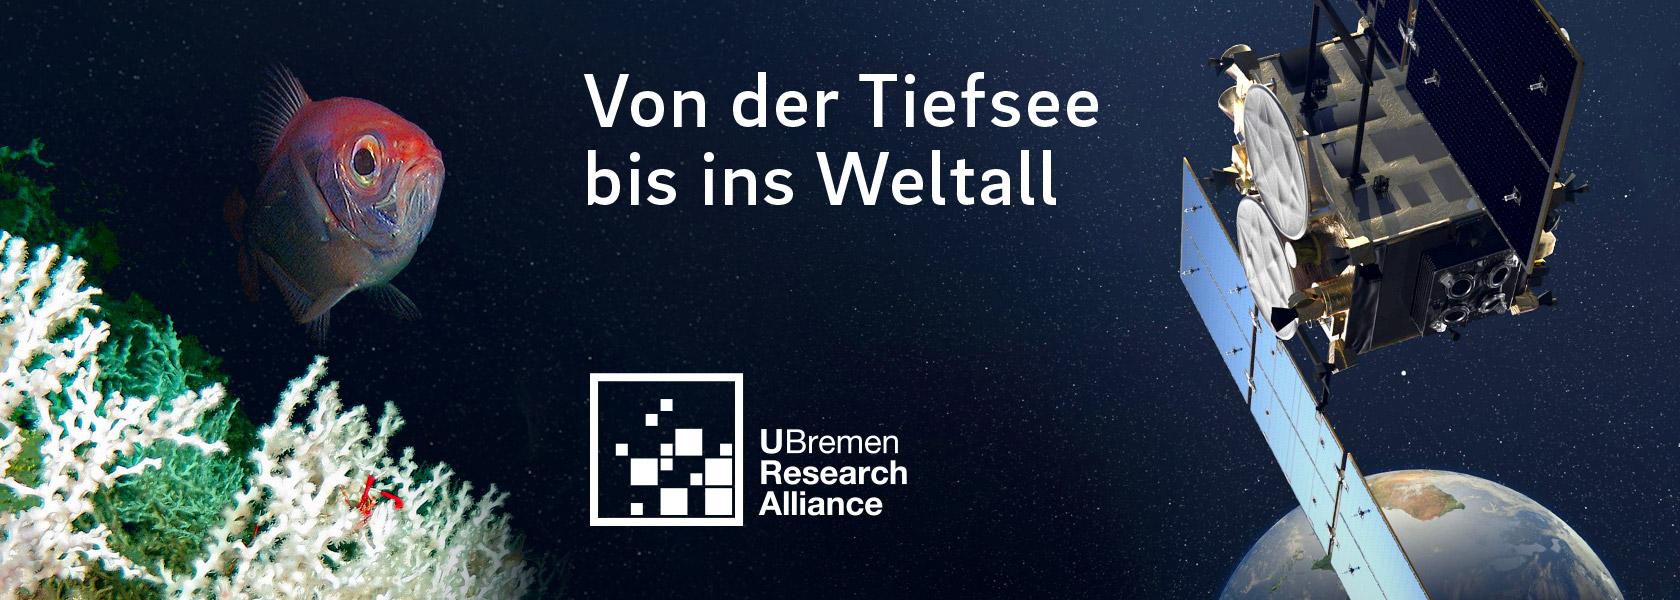 (C) U Bremen Research Alliance